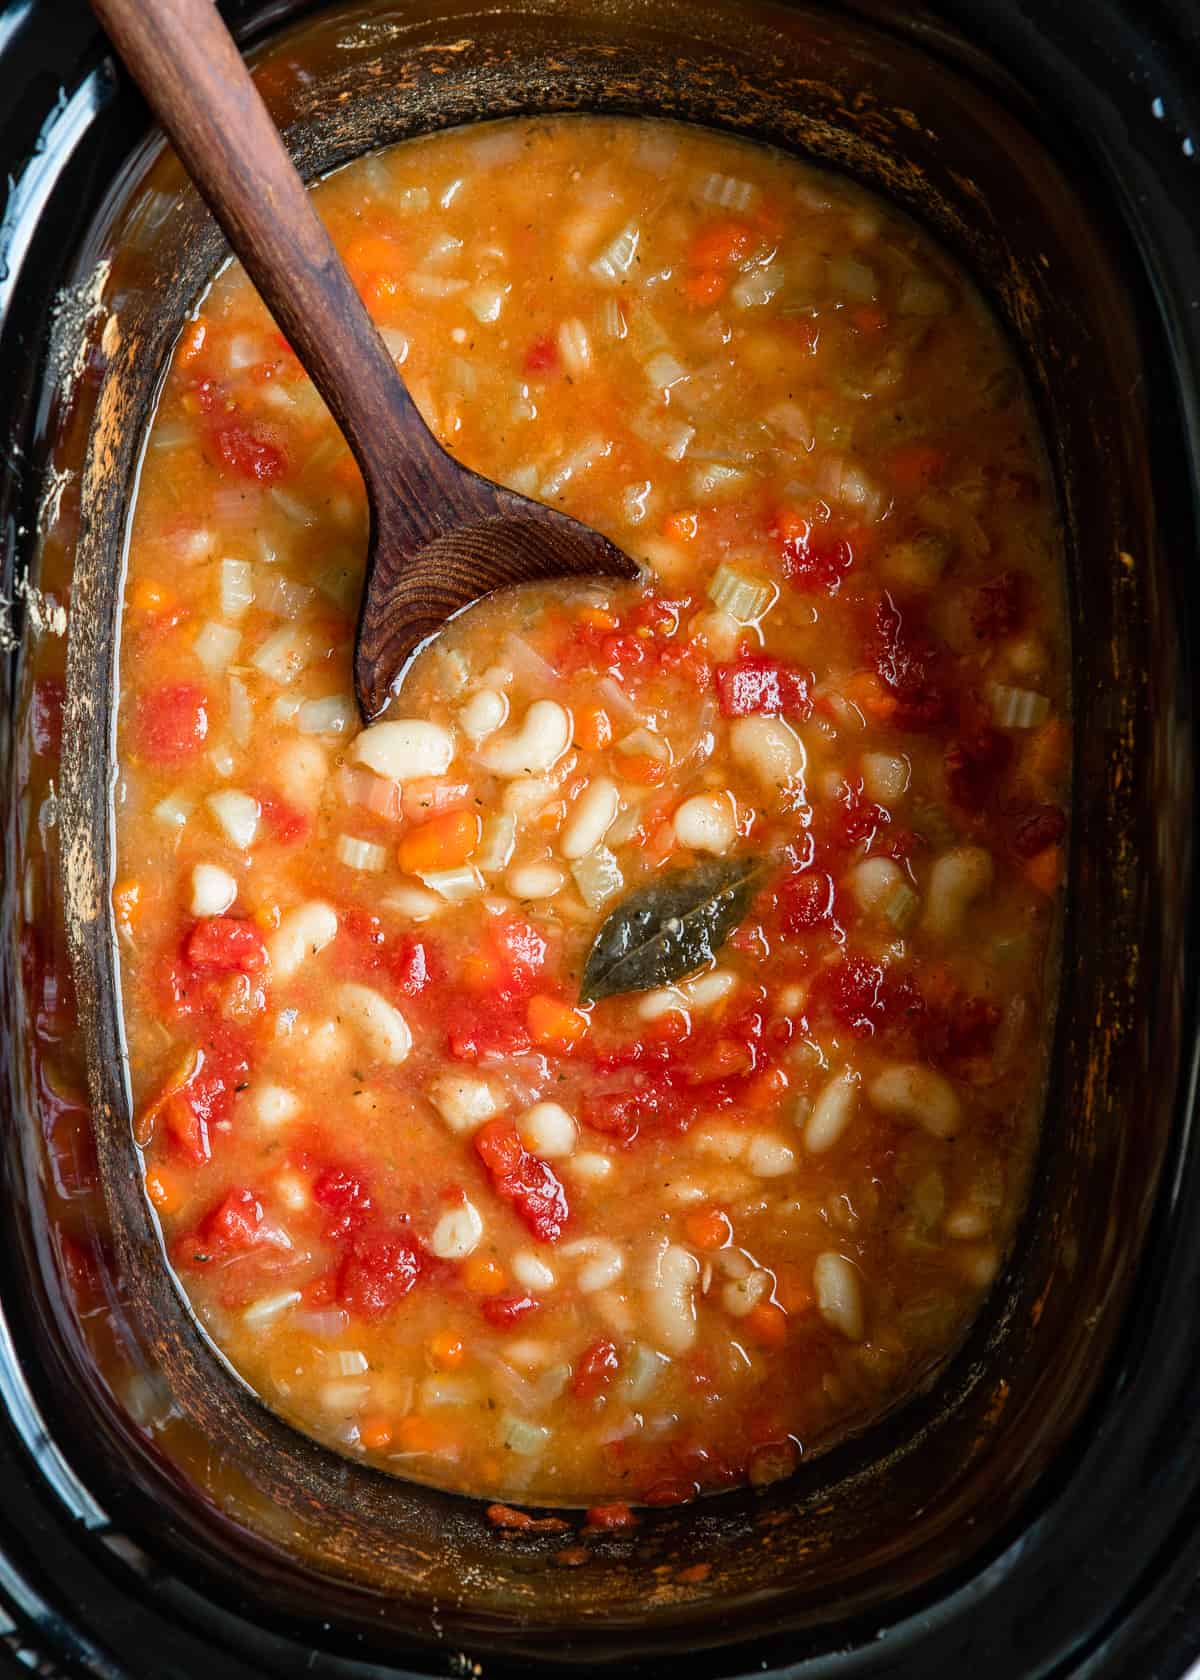 Boil beans for bean soup